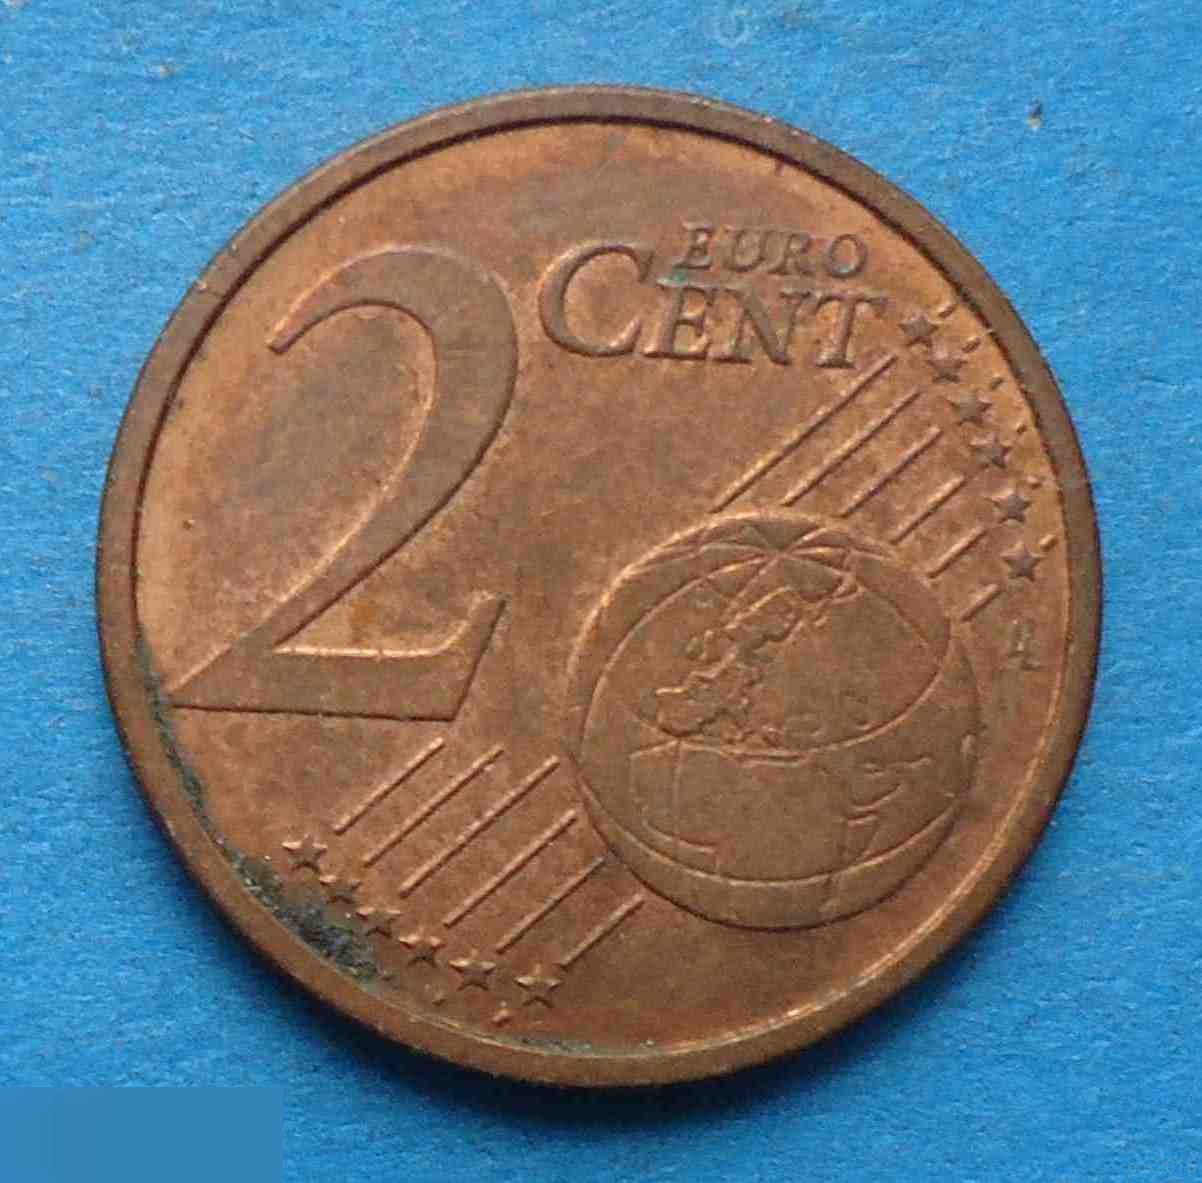 2 евро центов 2004 F